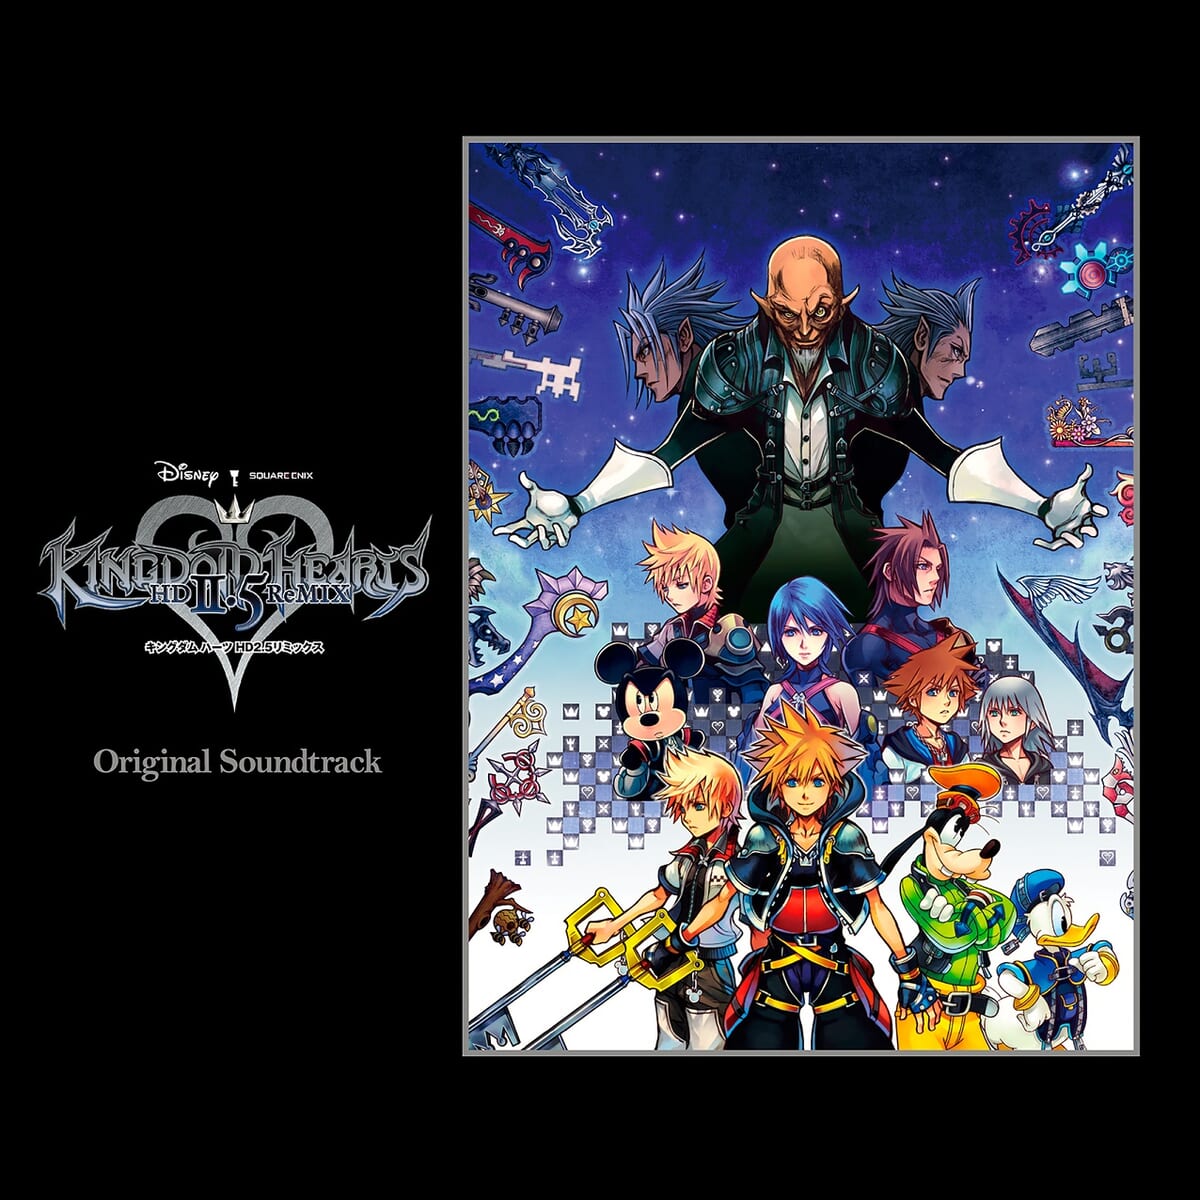 KINGDOM HEARTS -HD 2.5 ReMIX- Original Soundtrack